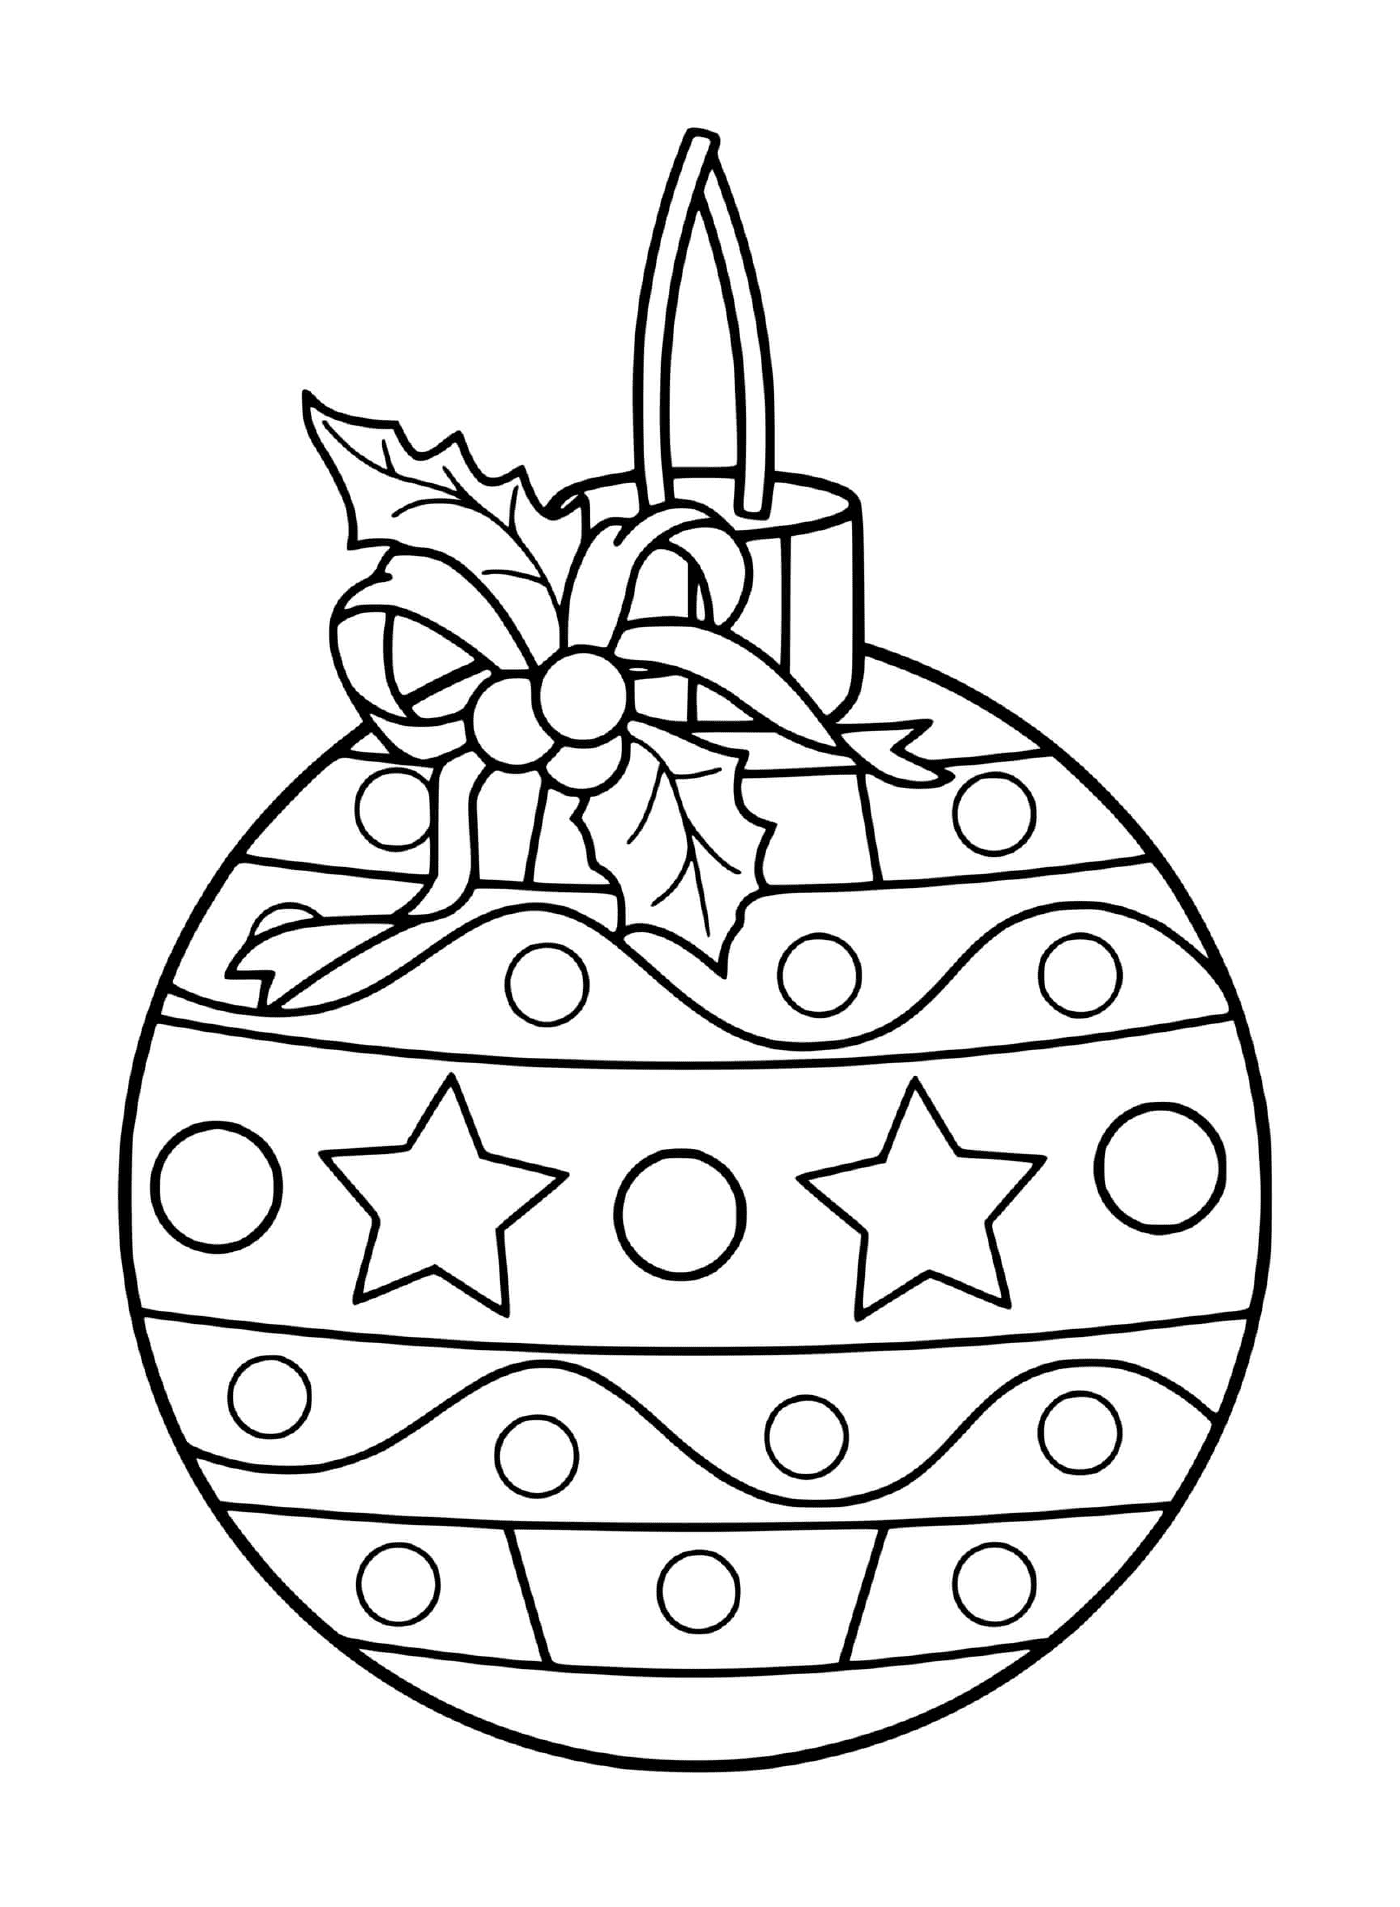   Une superbe boule de Noël avec des décorations festives 